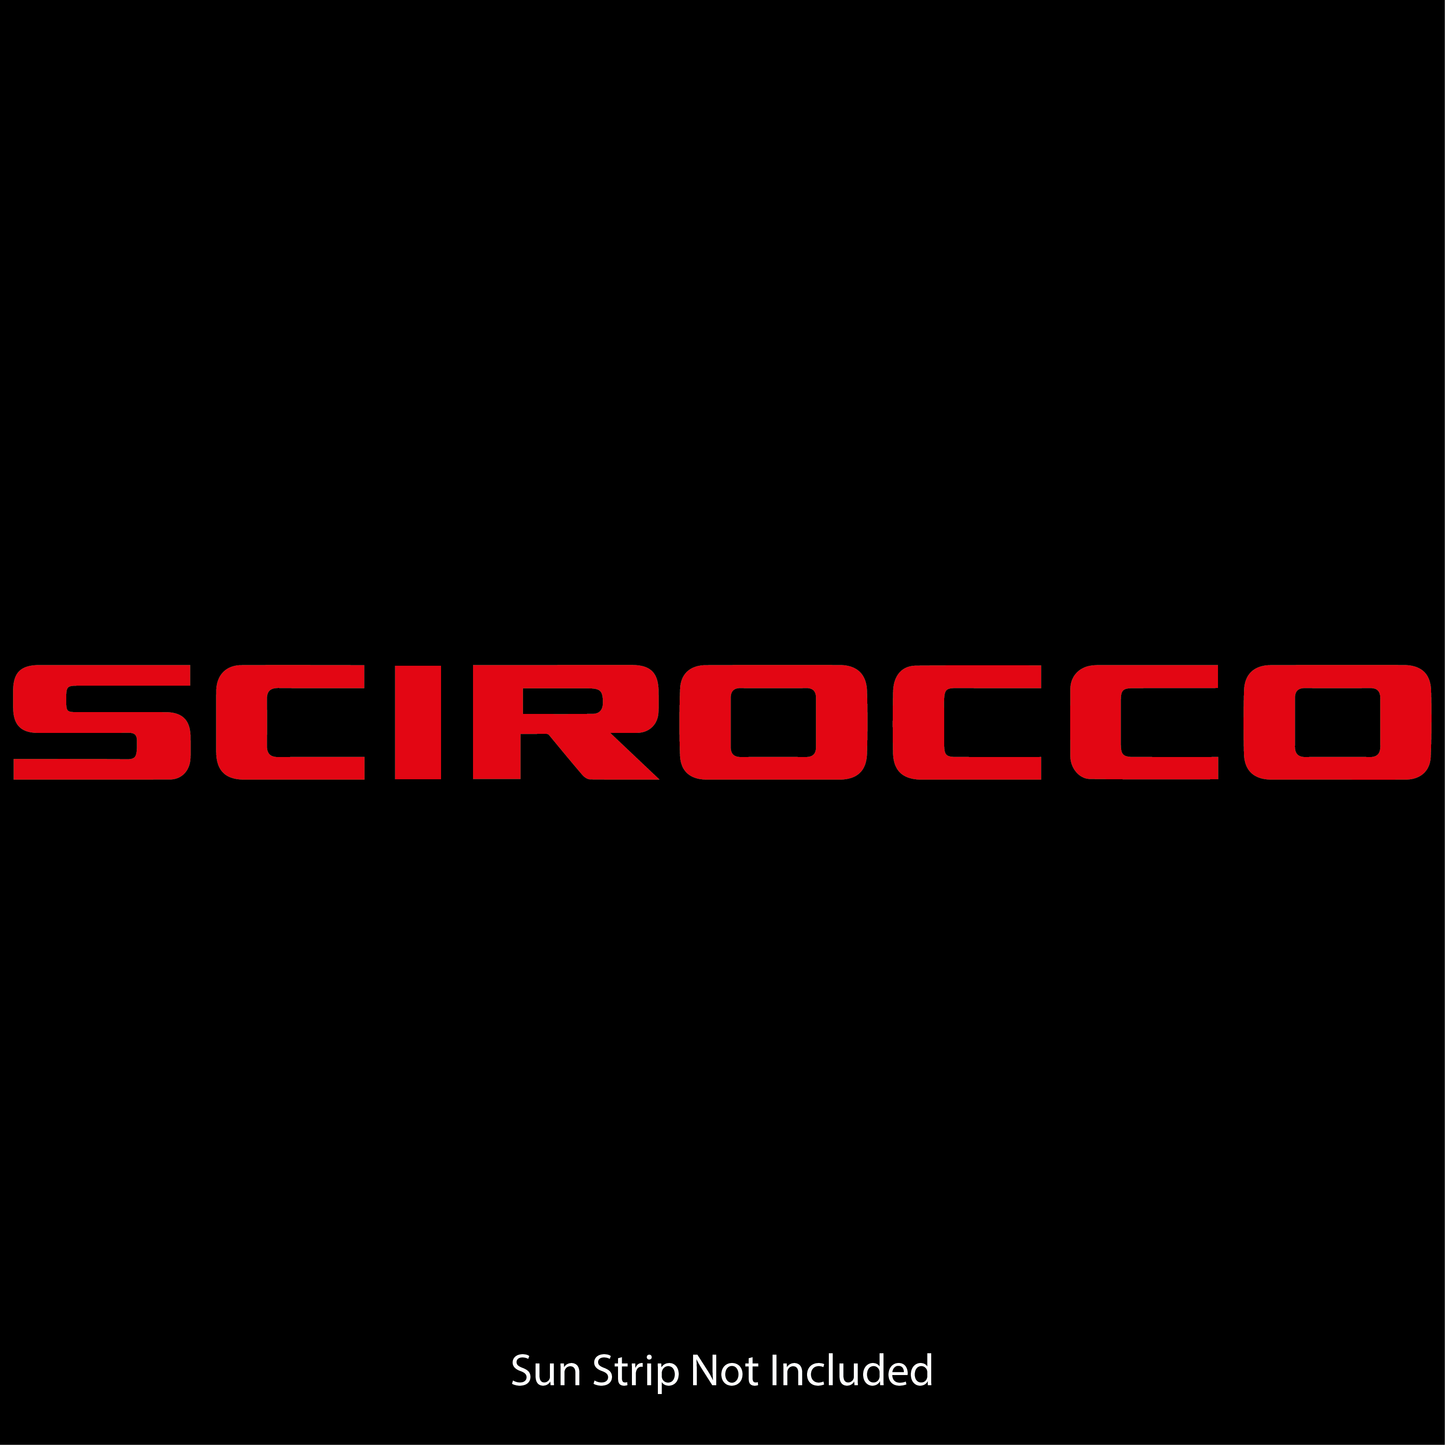 VW Scirocco Sun Strip Text